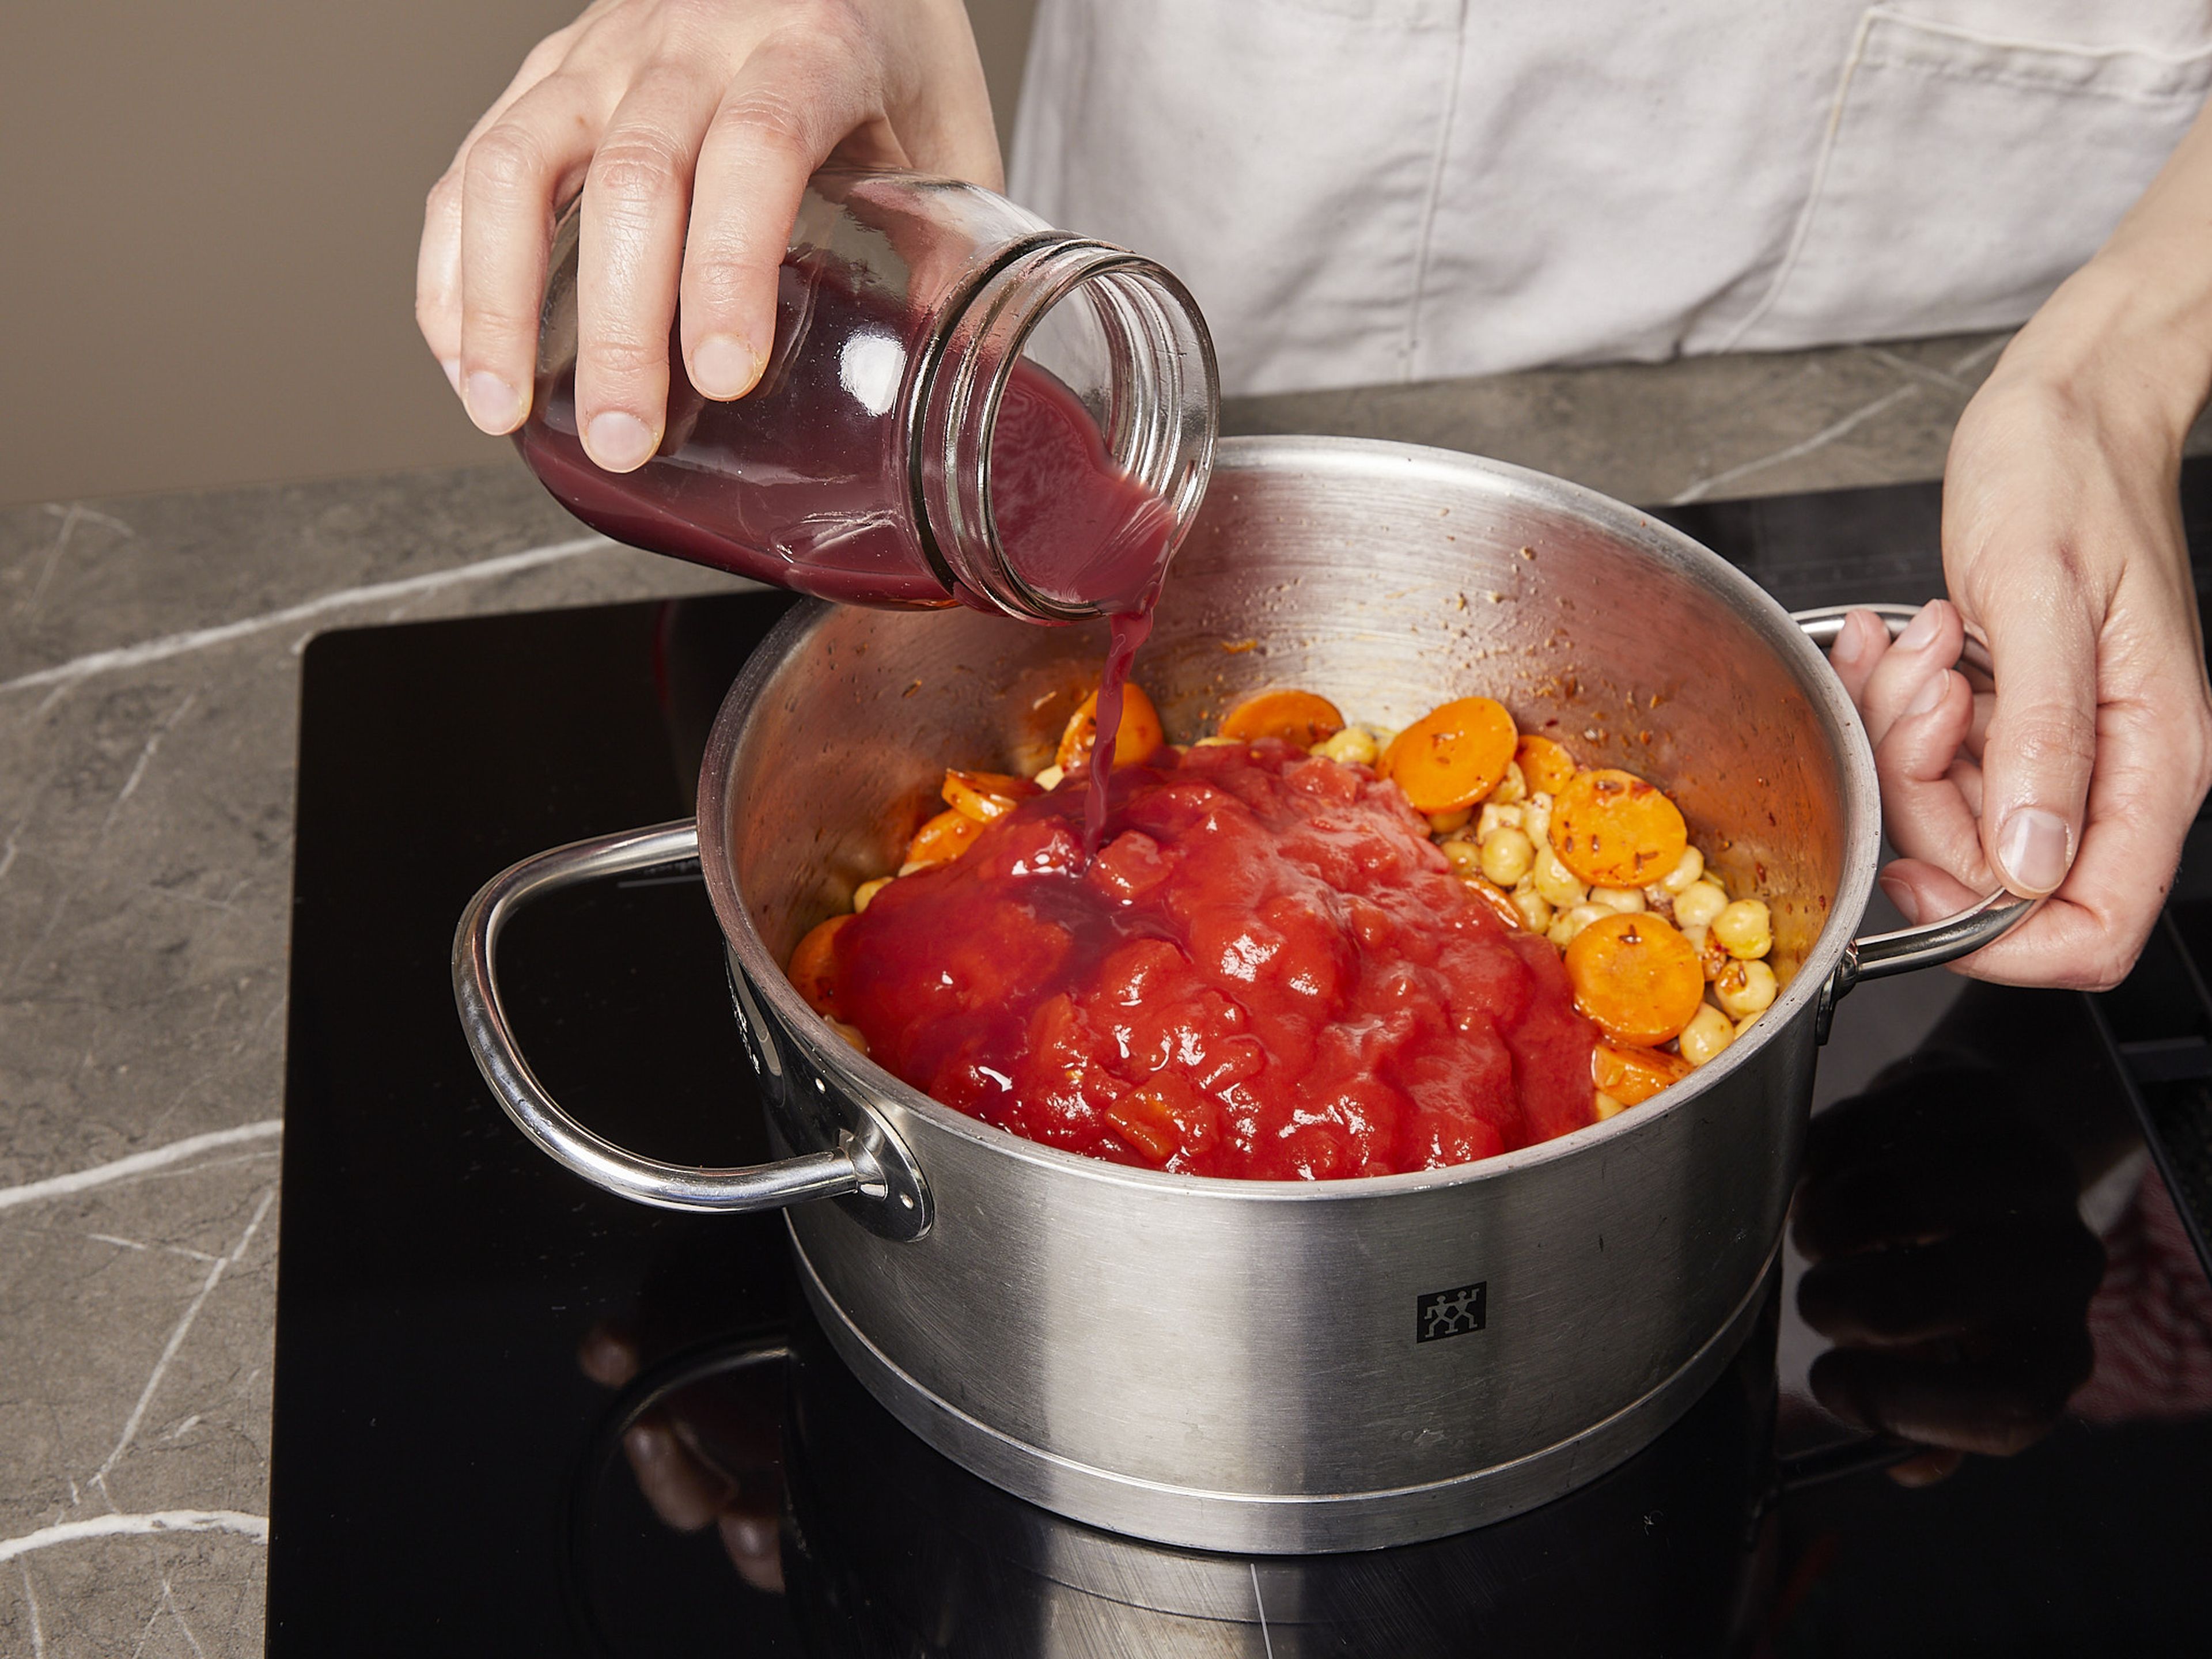 Die Kichererbsen abspülen und abtropfen lassen. Knoblauch hacken und Zwiebel würfeln. Karotte in dicke runde Scheiben schneiden. Olivenöl in einem Topf erhitzen und Zwiebeln und Knoblauch mit Karotten, Chiliflocken und Kreuzkümmelsamen anbraten. Kichererbsen, stückige Tomaten, Zucker und Granatapfelsaft hinzugeben. Mit Salz würzen und bei starker Hitze unter gelegentlichem Rühren ca. 15 Min. köcheln lassen.